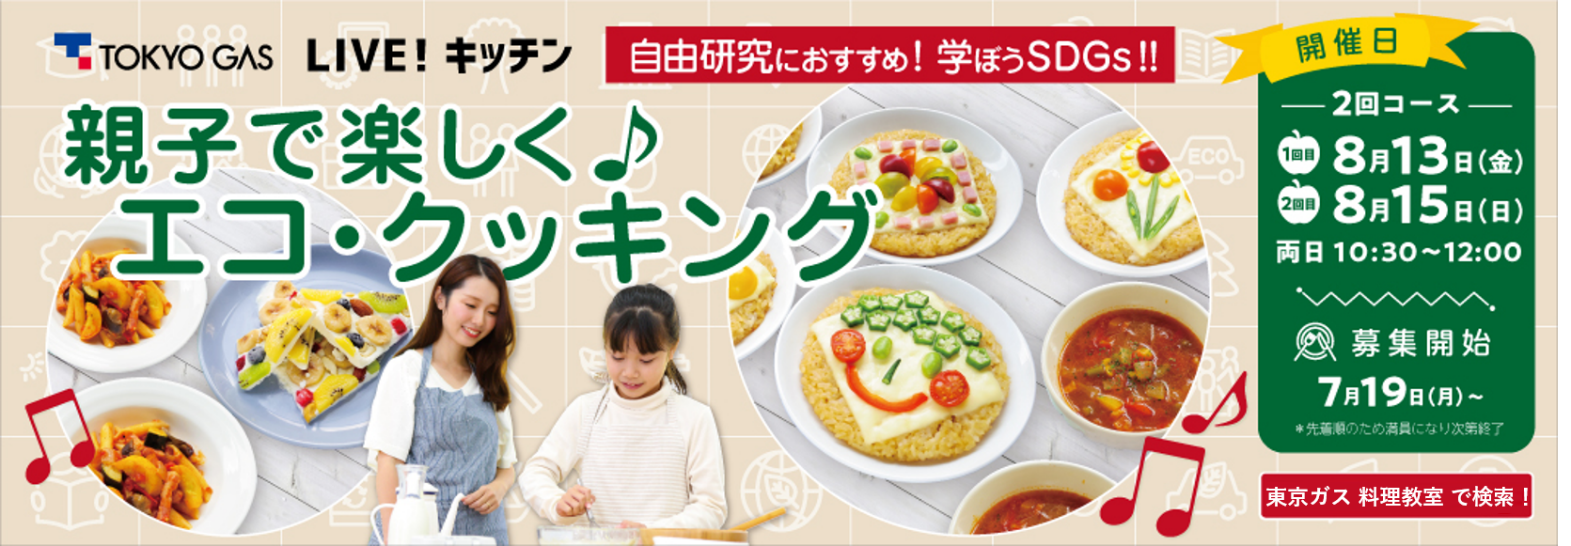 夏休みに親子でsdgsを学ぼう 自由研究にもぴったりなエコ クッキングにチャレンジ 東京ガスオンライン料理教室 東京ガス株式会社のプレスリリース